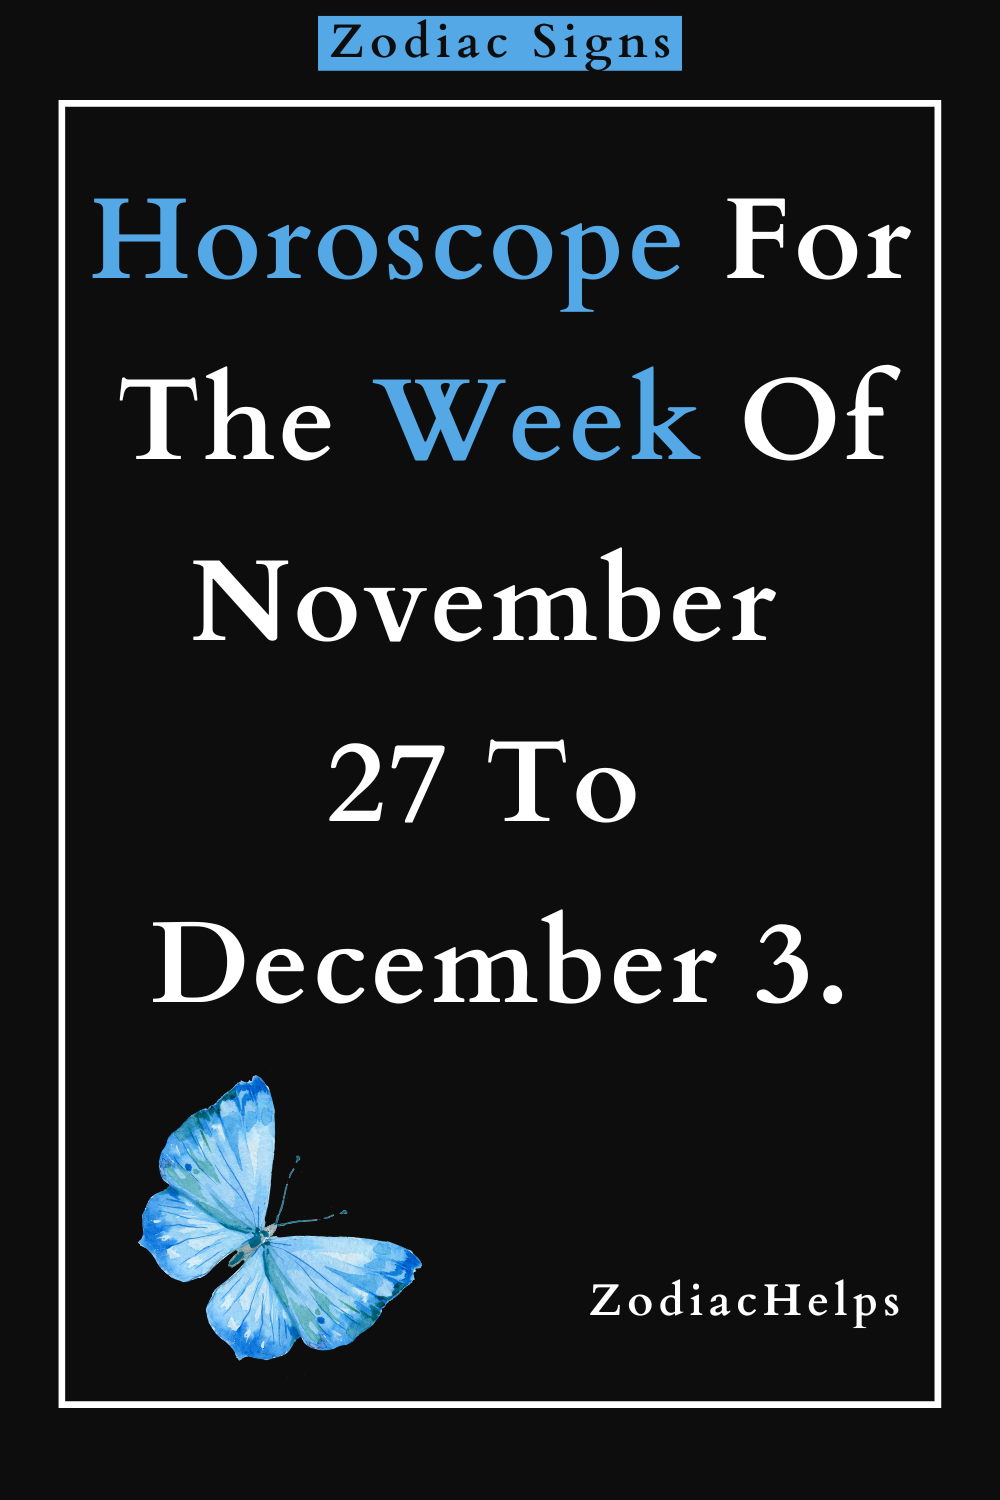 Horoscope For The Week Of November 27 To December 3.